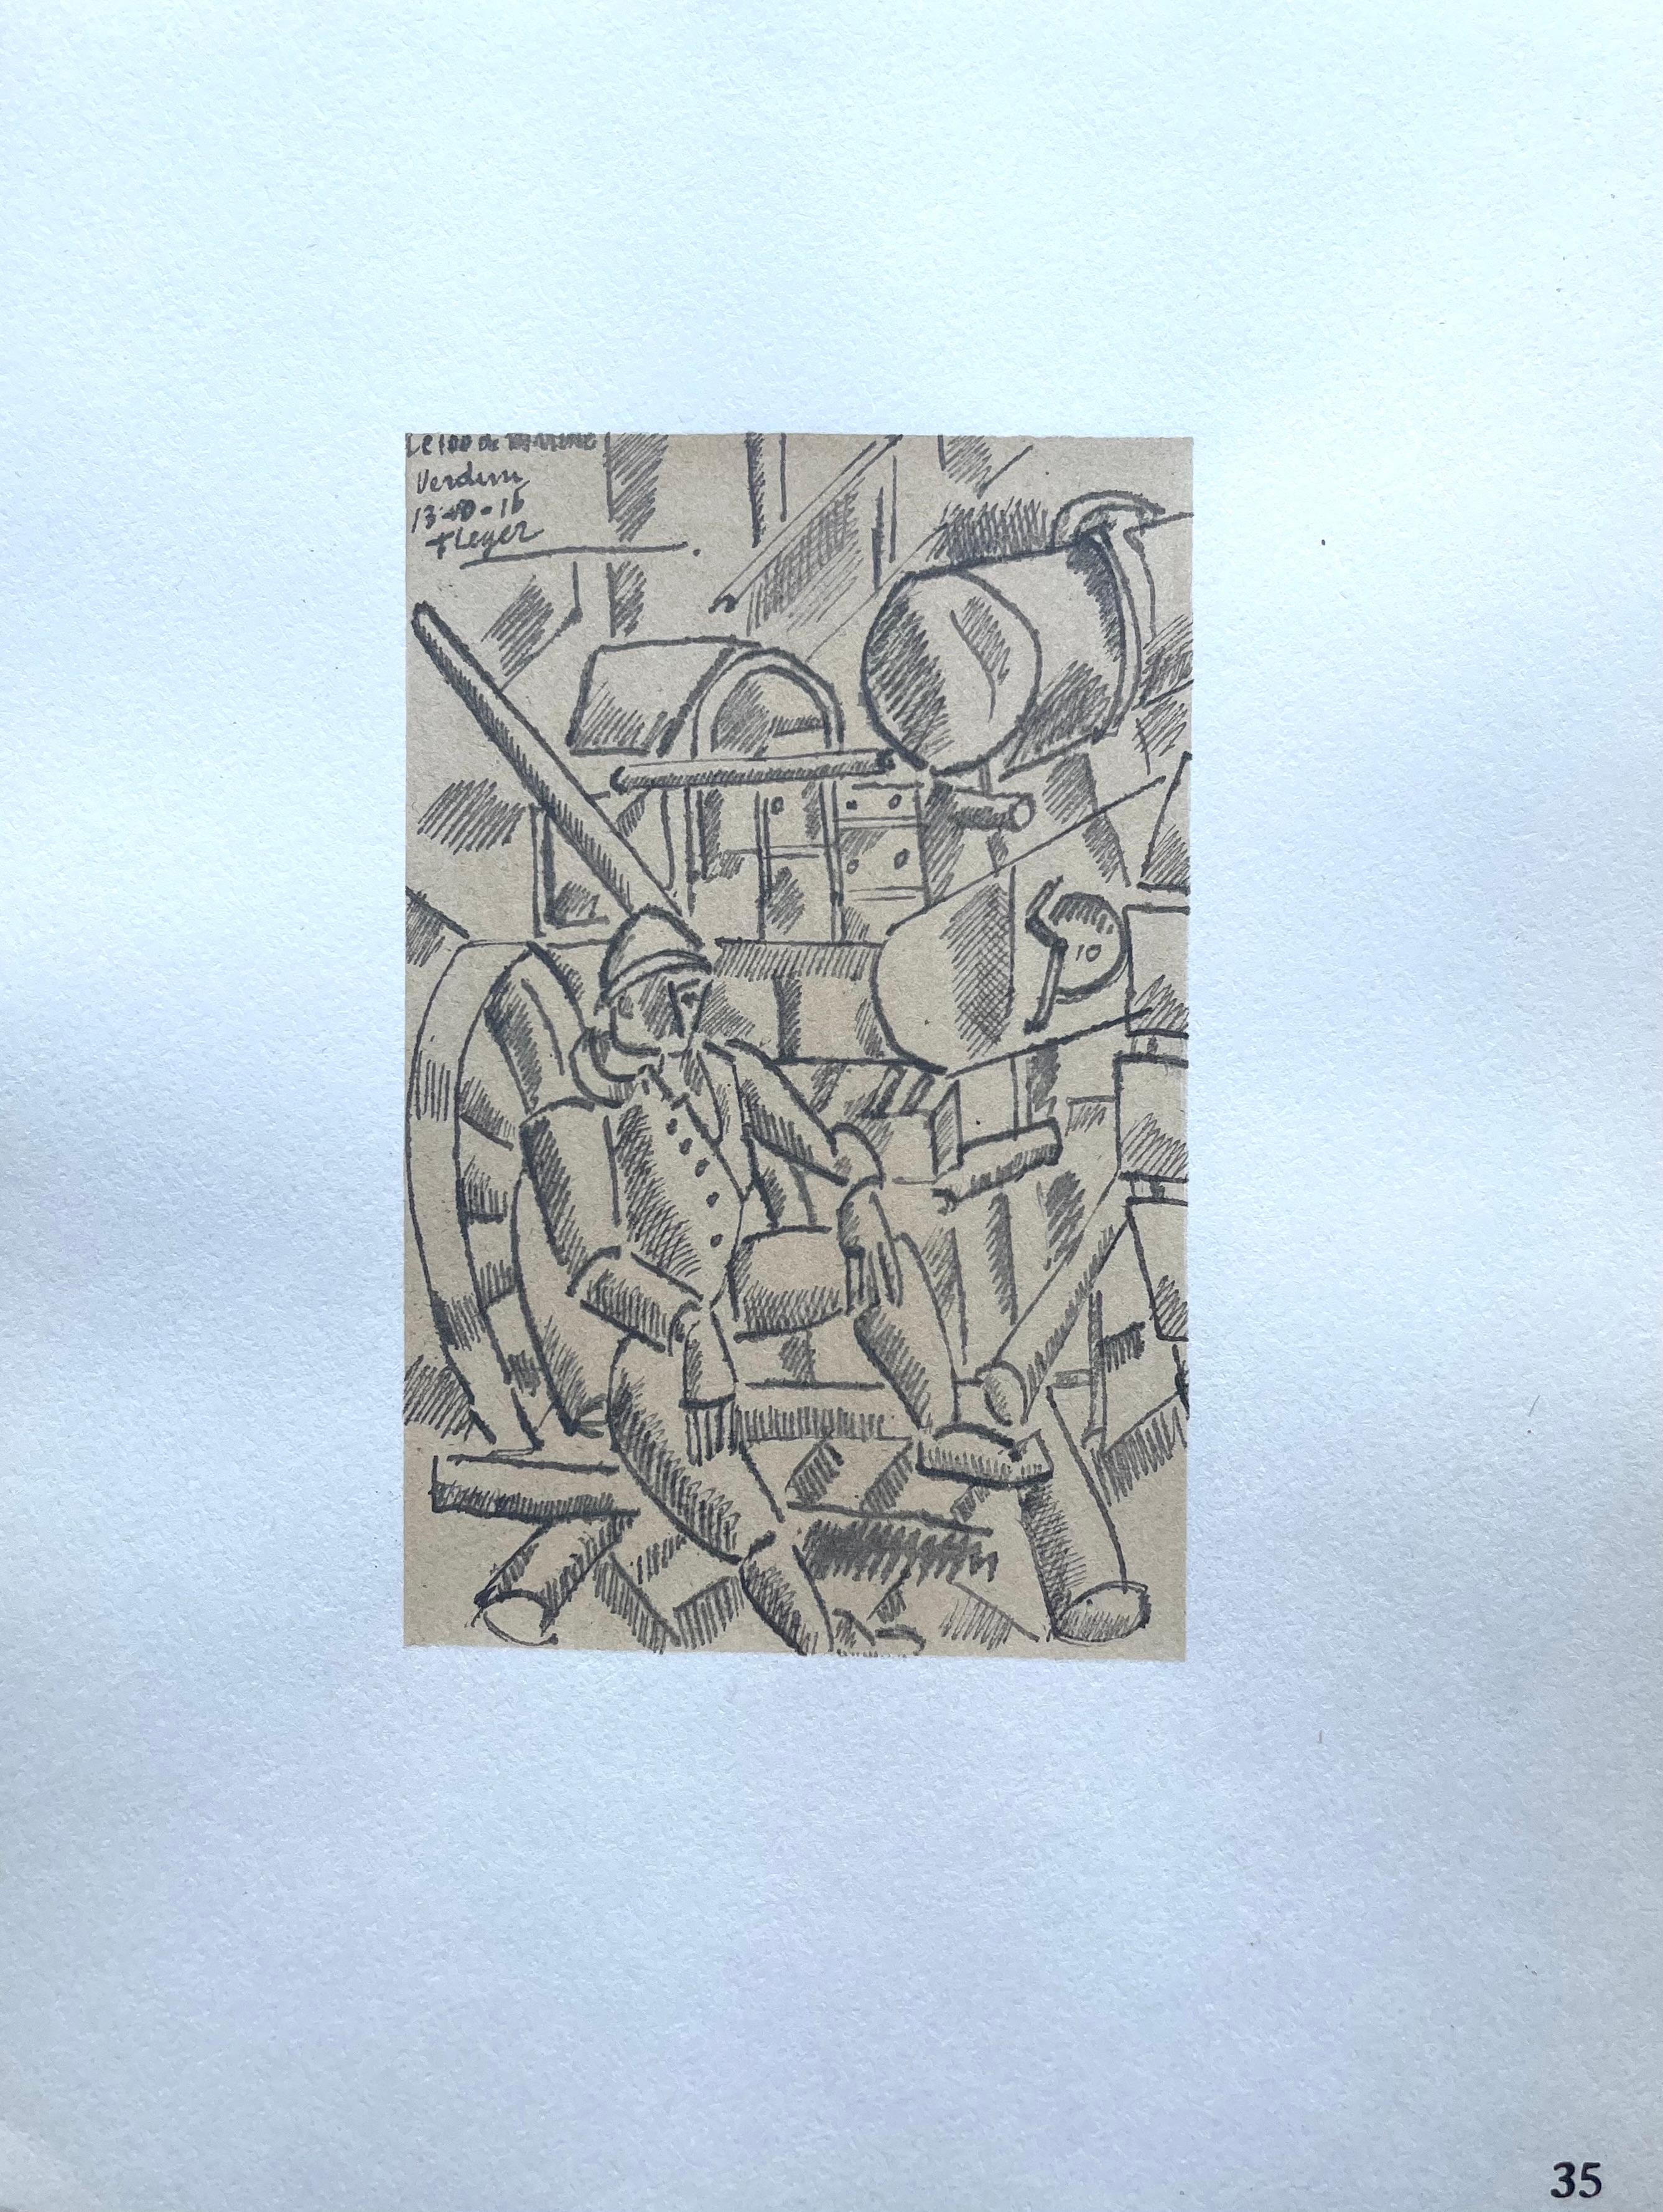 Léger, Le 100 De Marine, Fernand Léger: Dessins de Guerre (after) For Sale 3